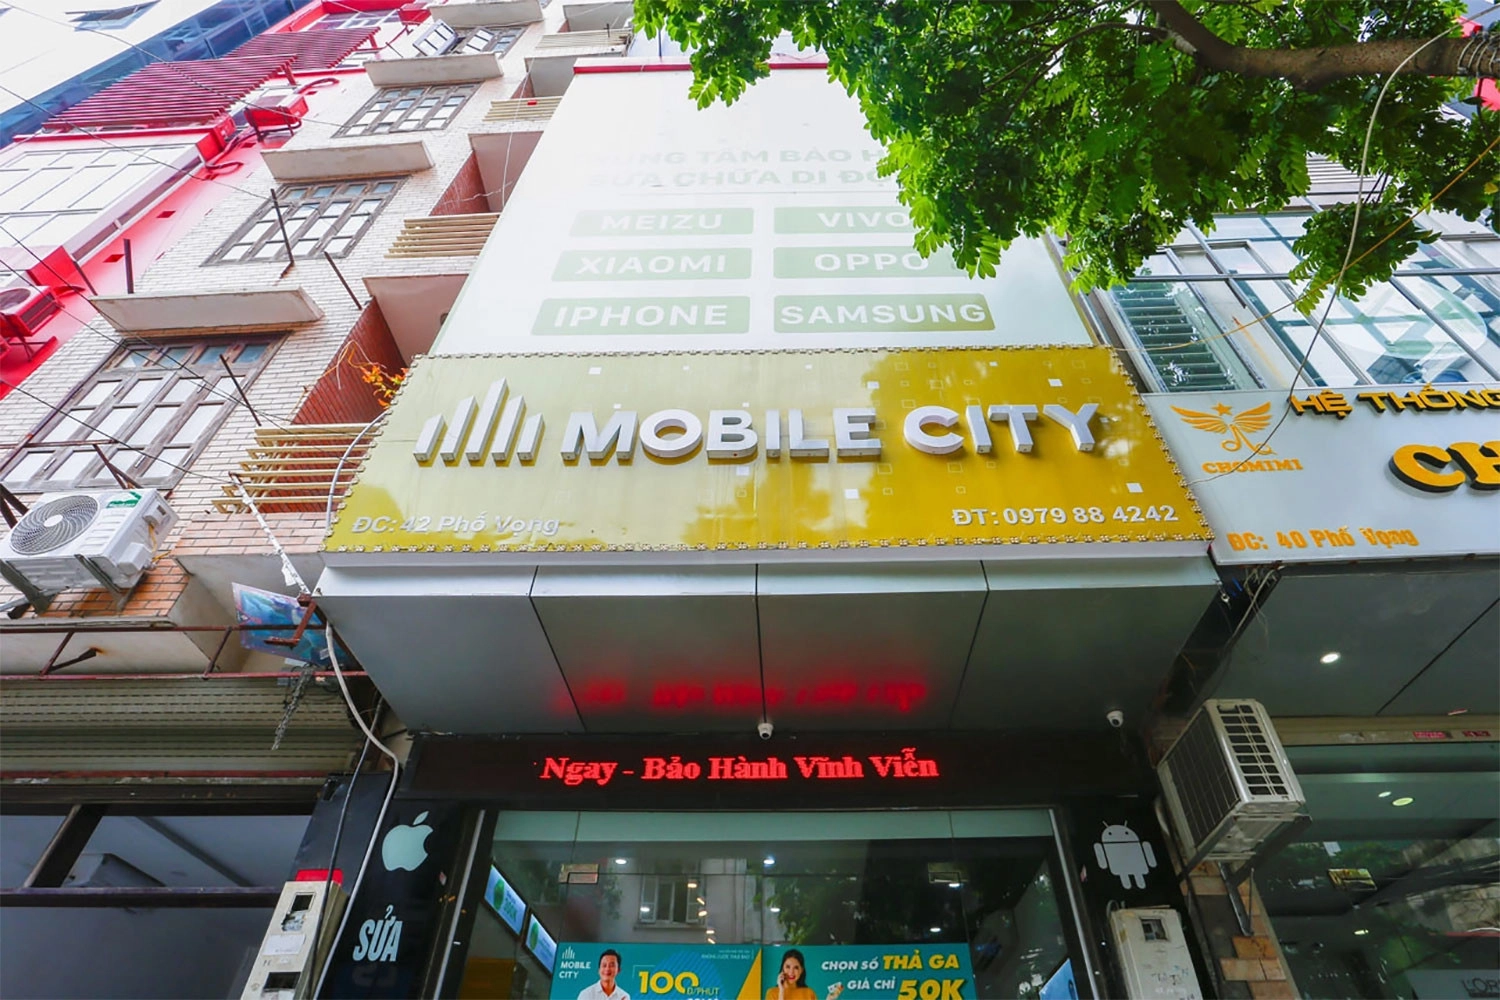 Thay màn hình iPhone X, Địa chỉ thay màn hình iPhone X tại Hà Nội, Đà Nẵng, Tp.HCM